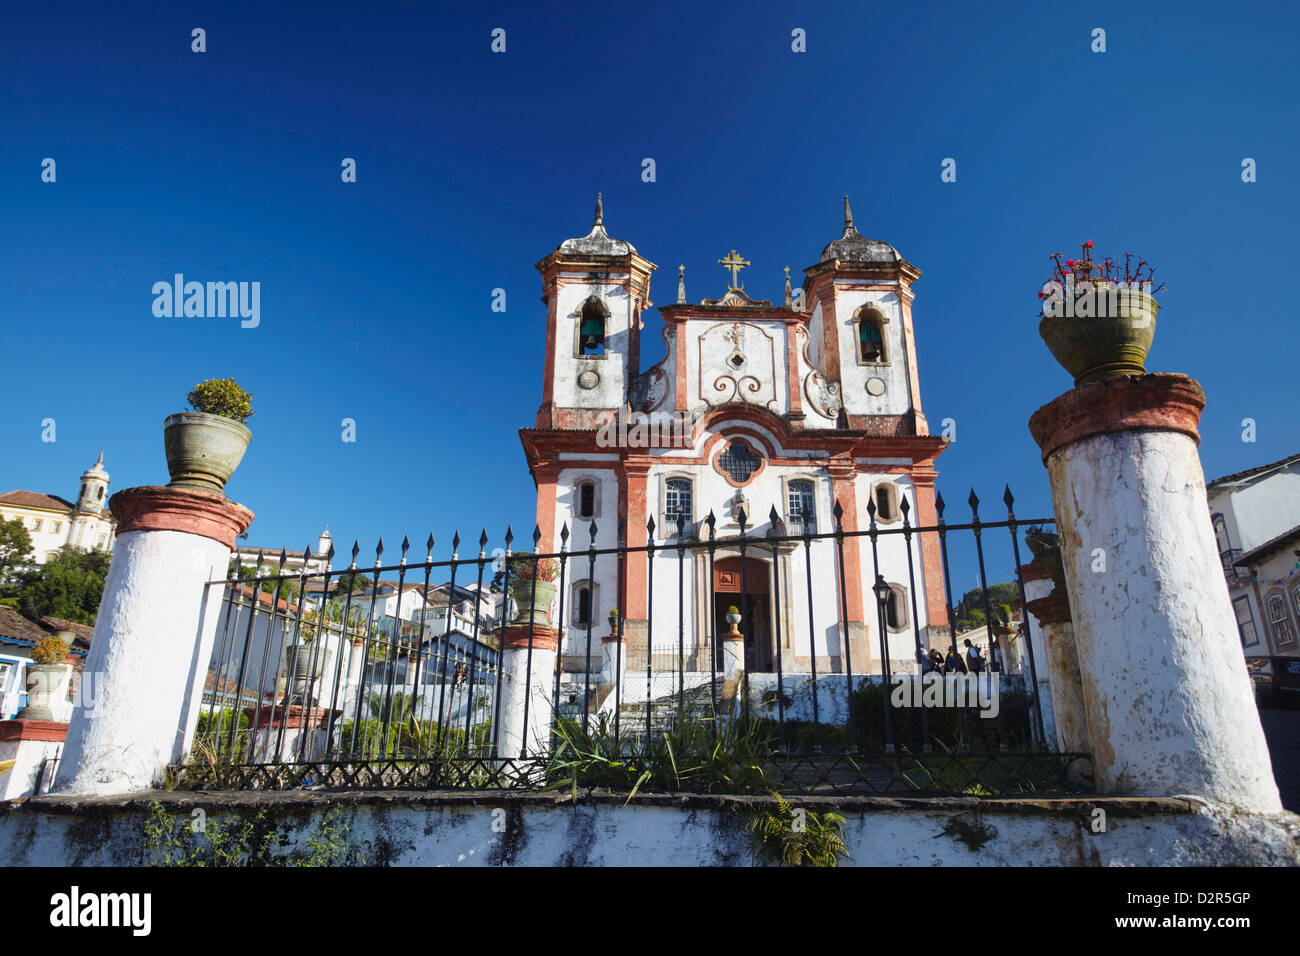 Our Lady of Conceicao de Antonio Dias Church, Ouro Preto, UNESCO World Heritage Site, Minas Gerais, Brazil, South America Stock Photo